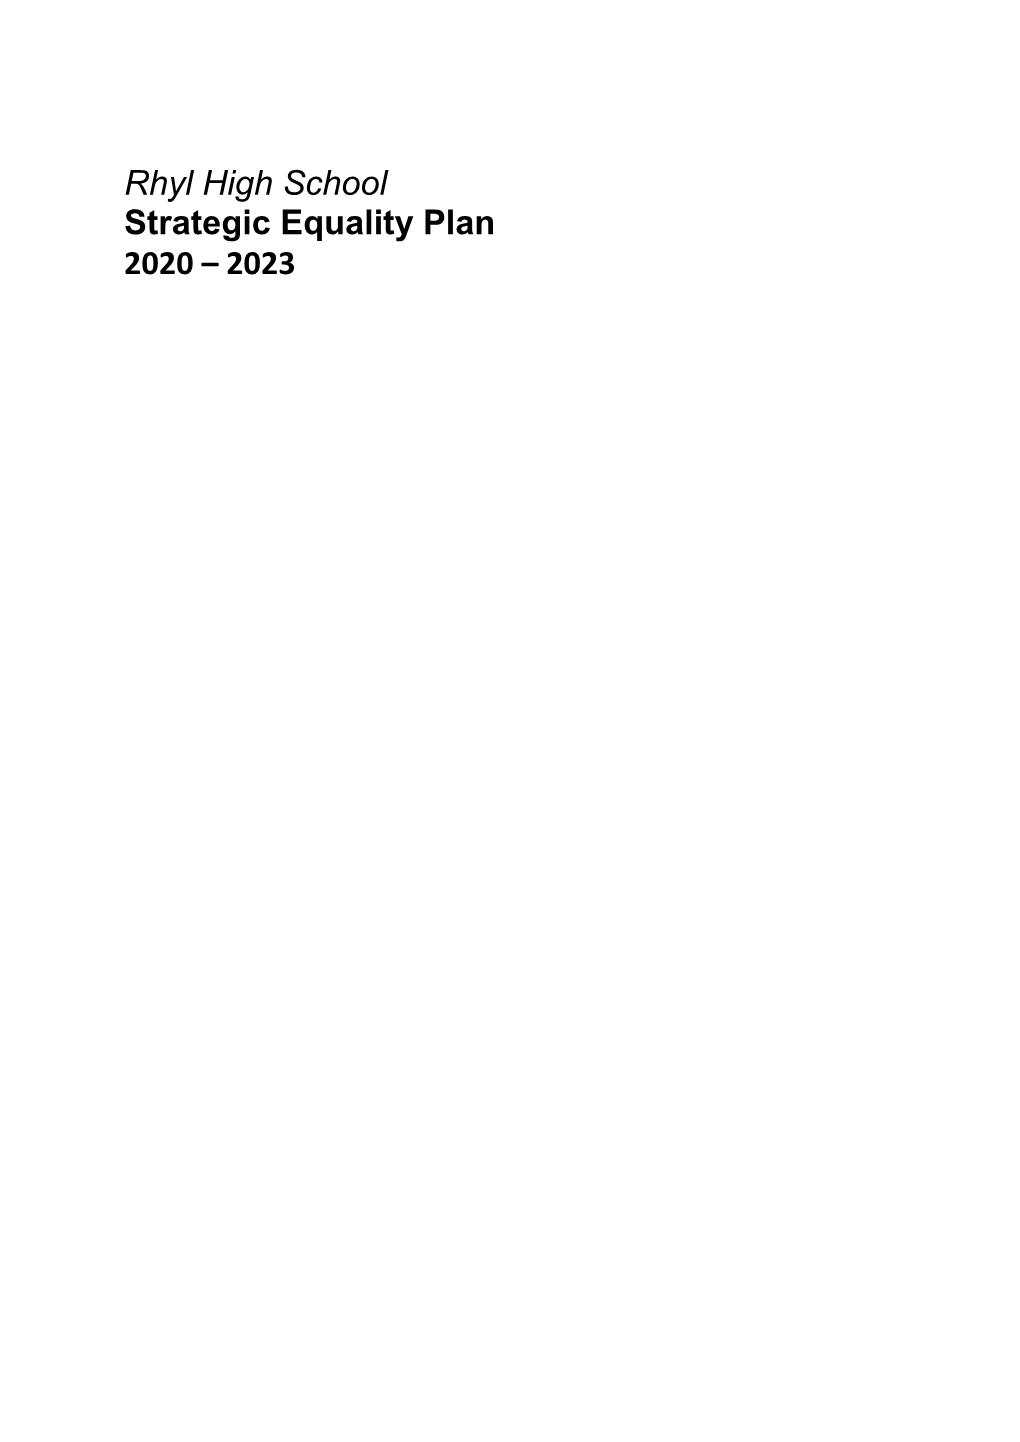 Rhyl High School Strategic Equality Plan 2020 – 2023